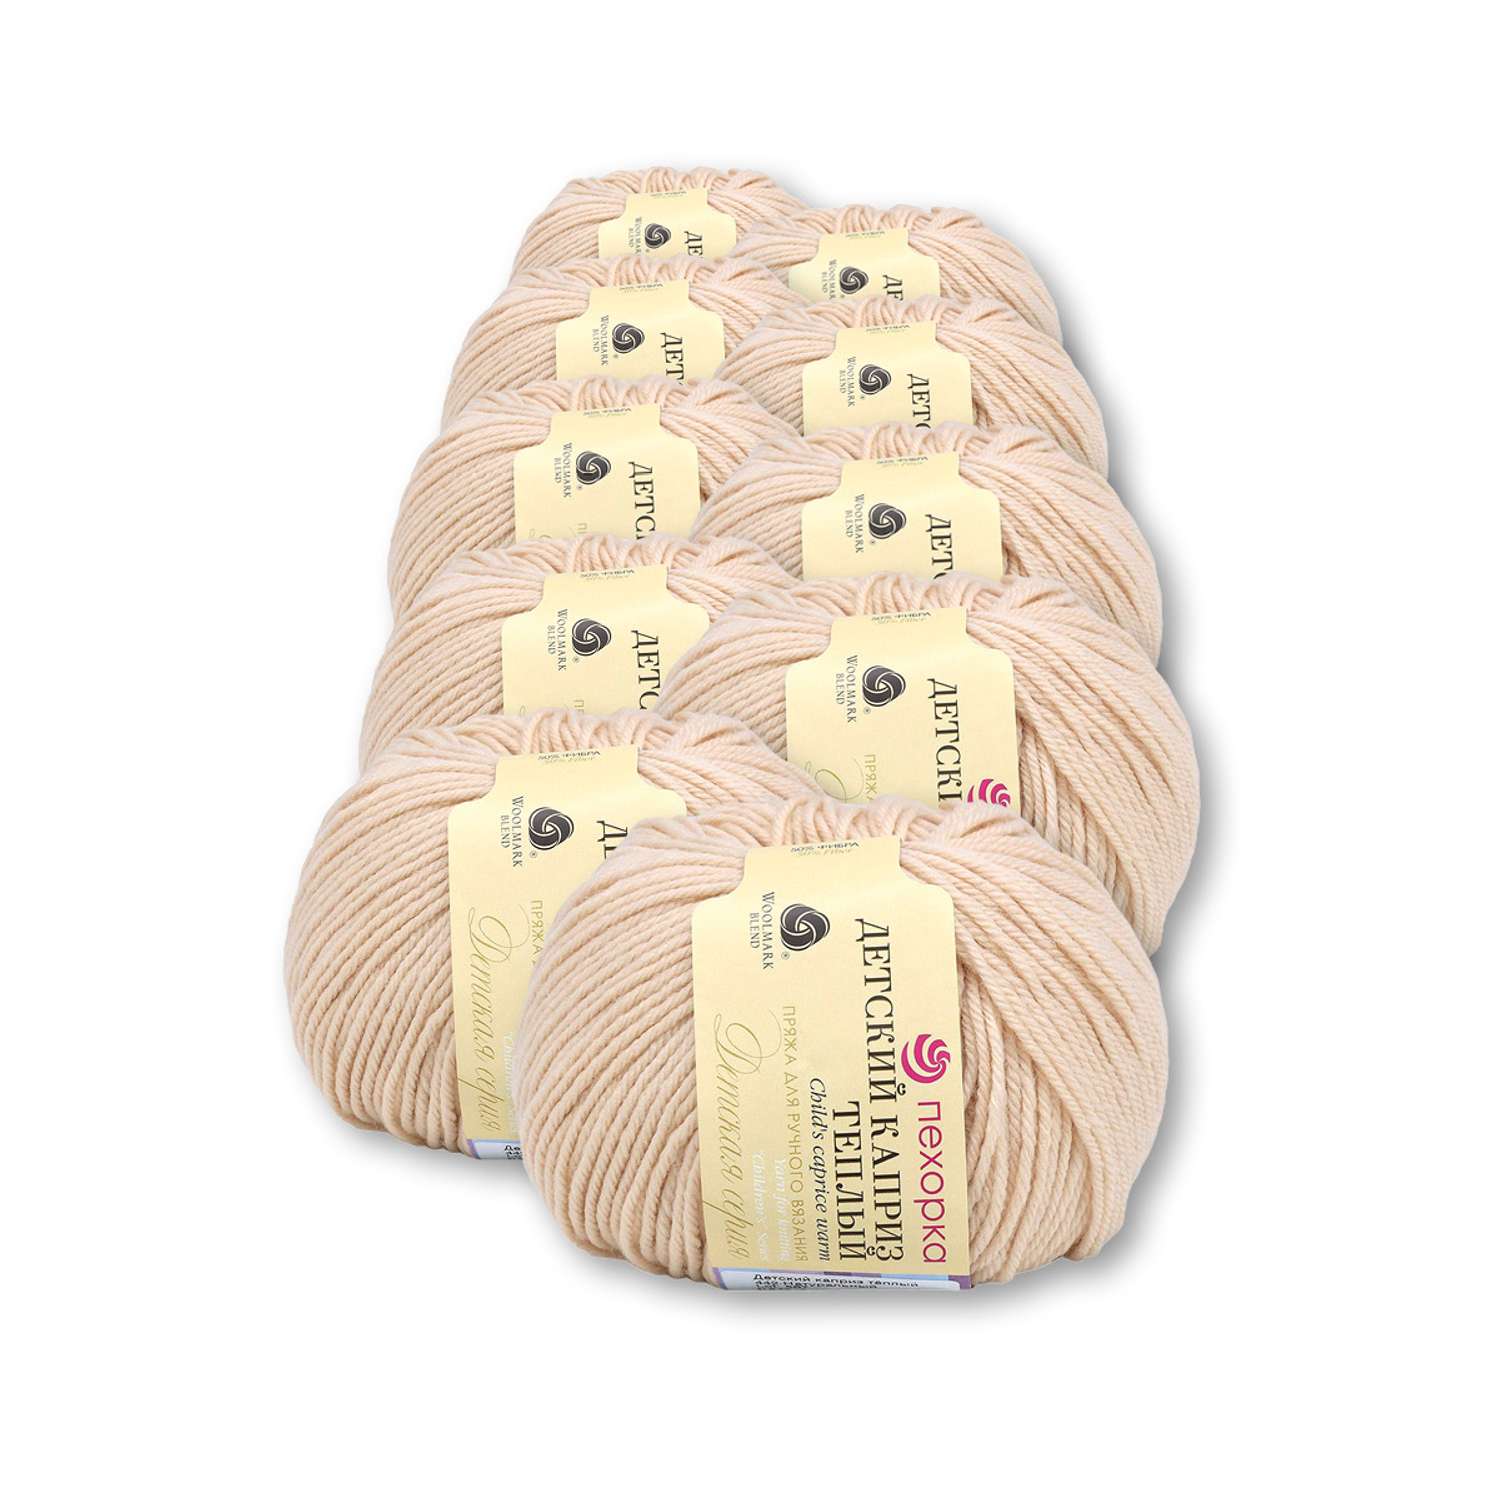 Пряжа для вязания Пехорка детский каприз тёплый 50 гр 125 м мериносовая шерсть фибра 442 натуральный 10 мотков - фото 2